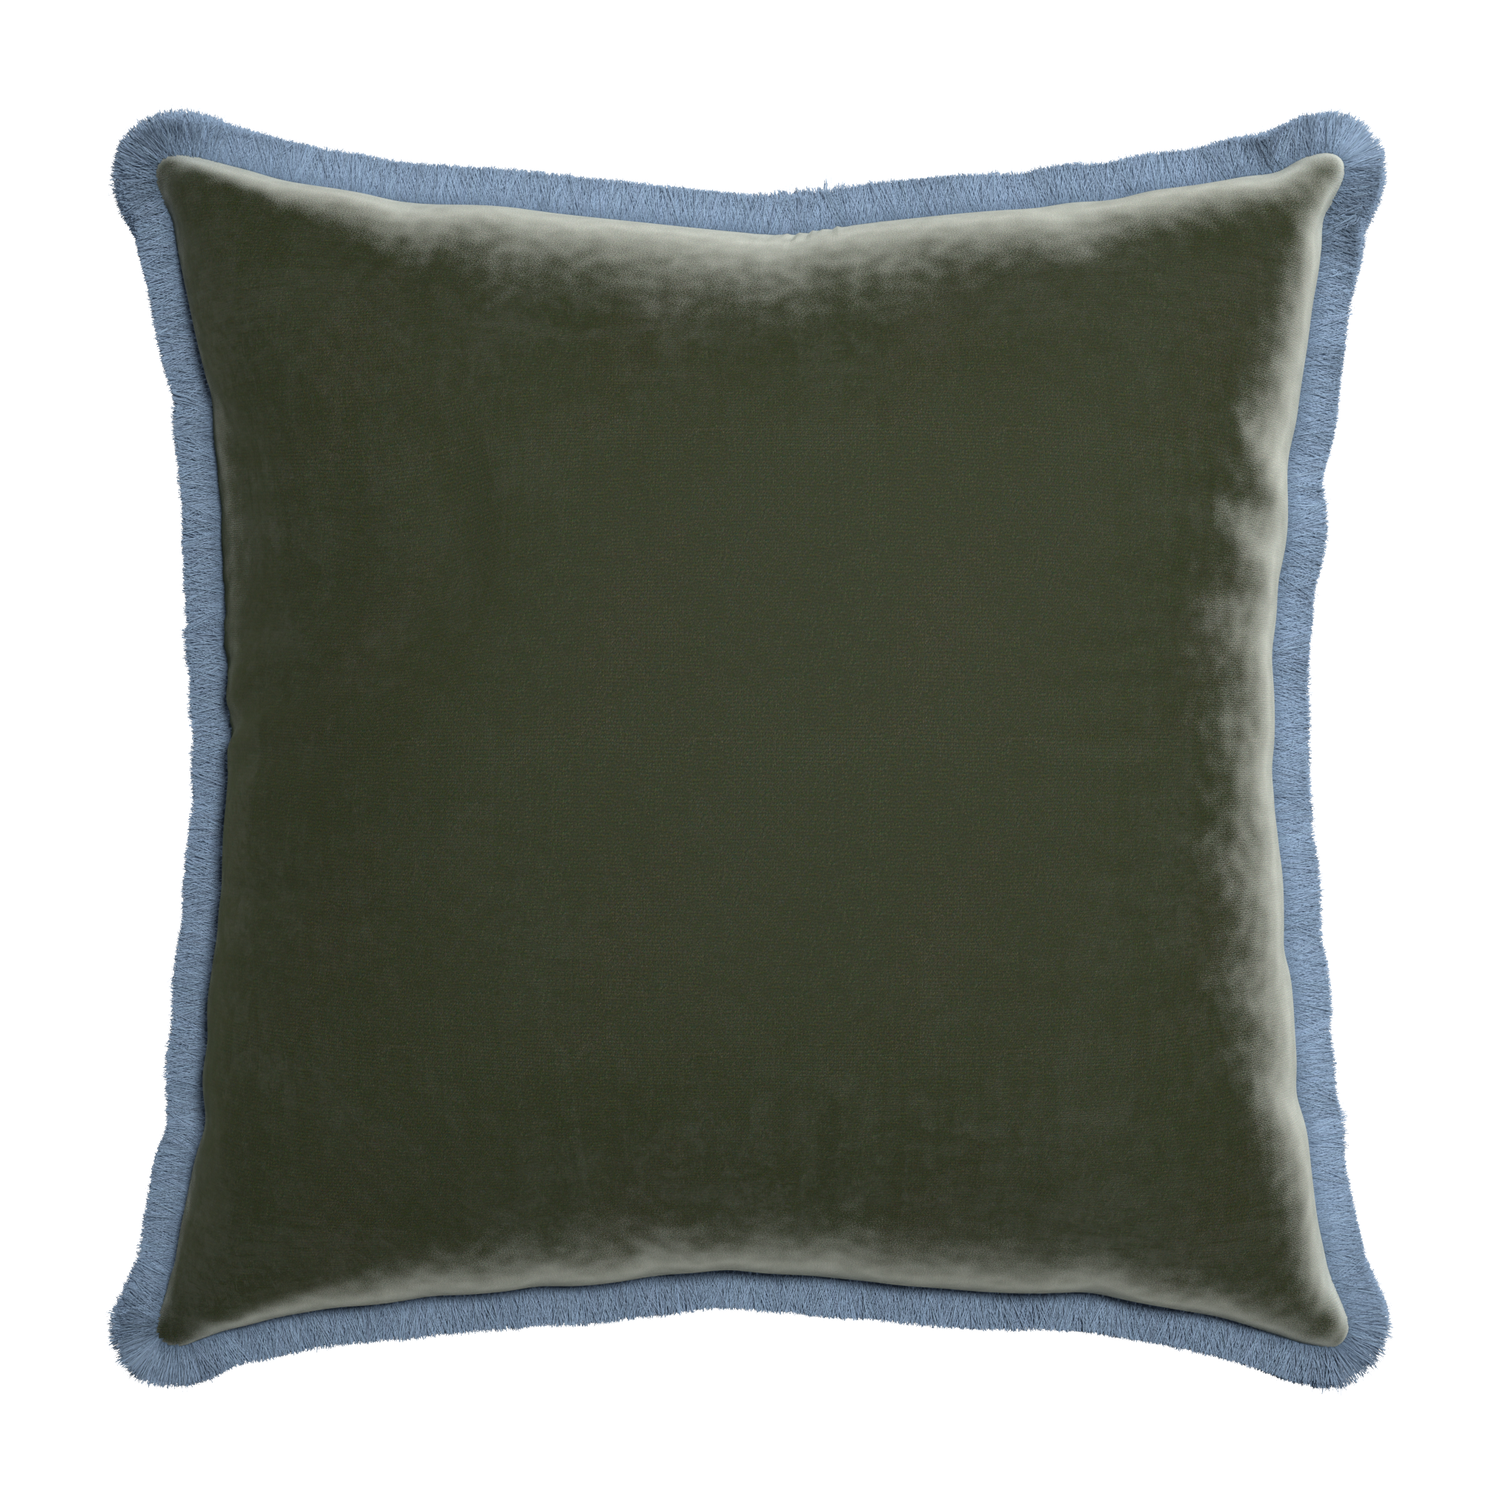 Euro-sham fern velvet custom pillow with sky fringe on white background